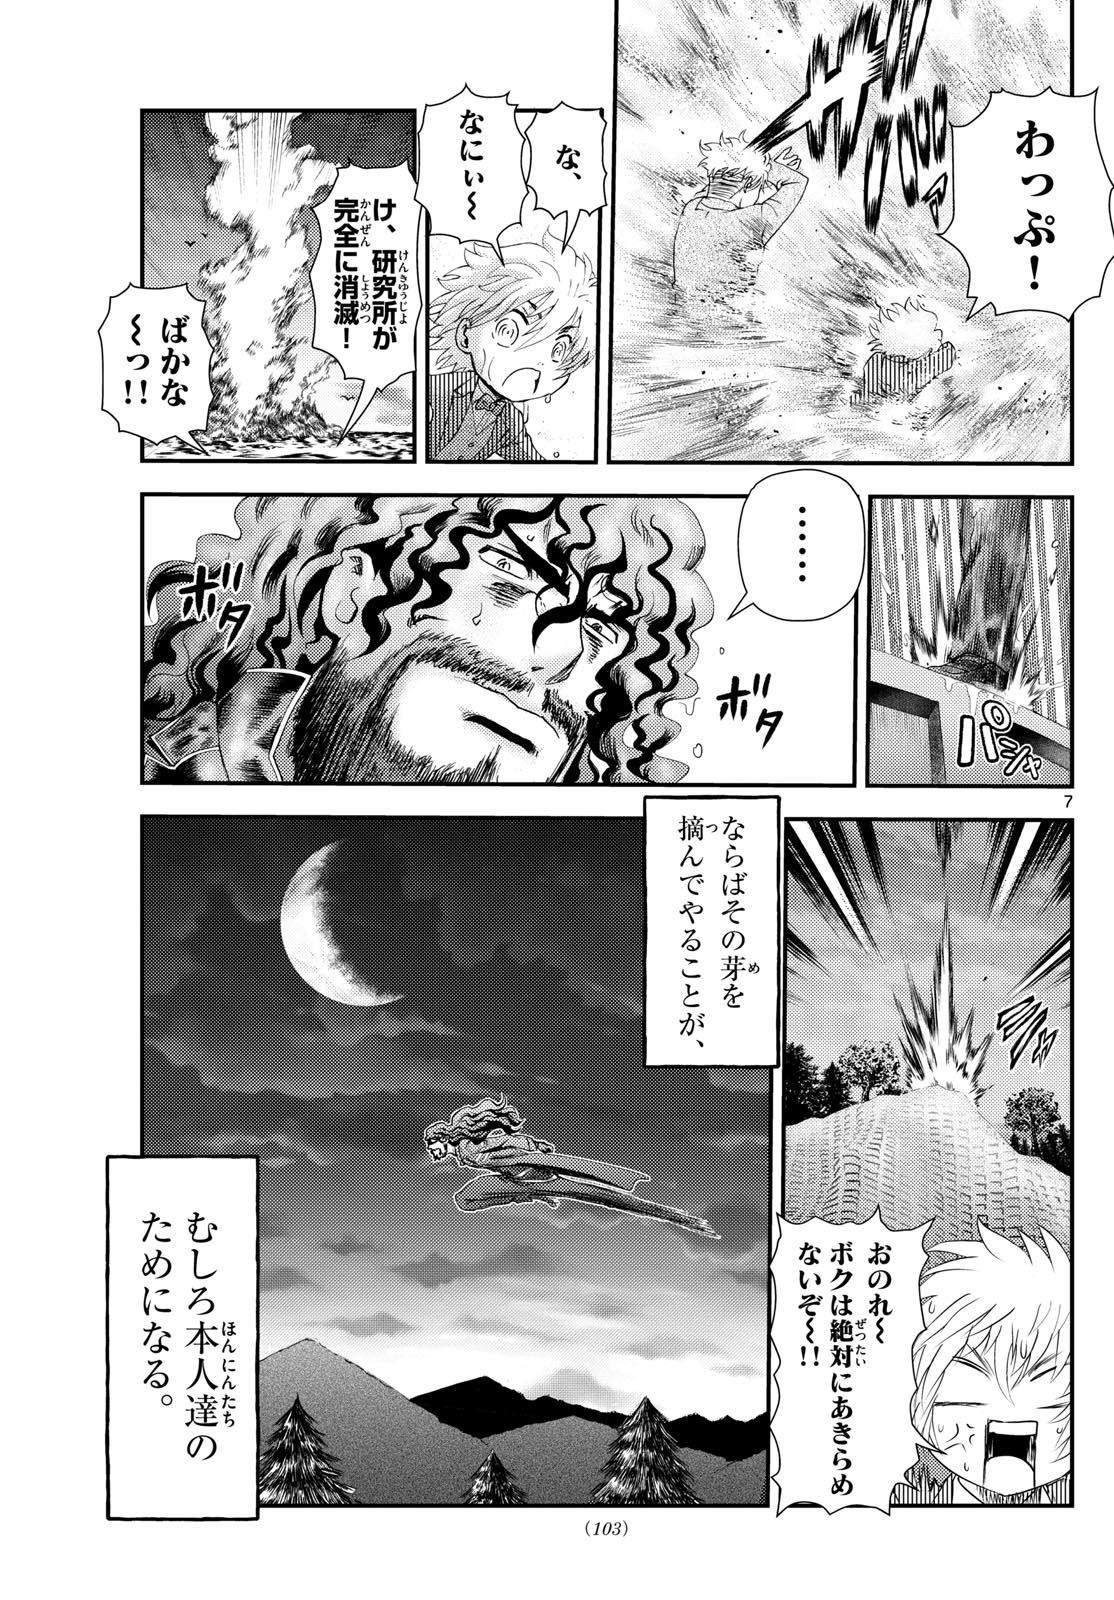 Kimi wa 008 - Chapter 294 - Page 7